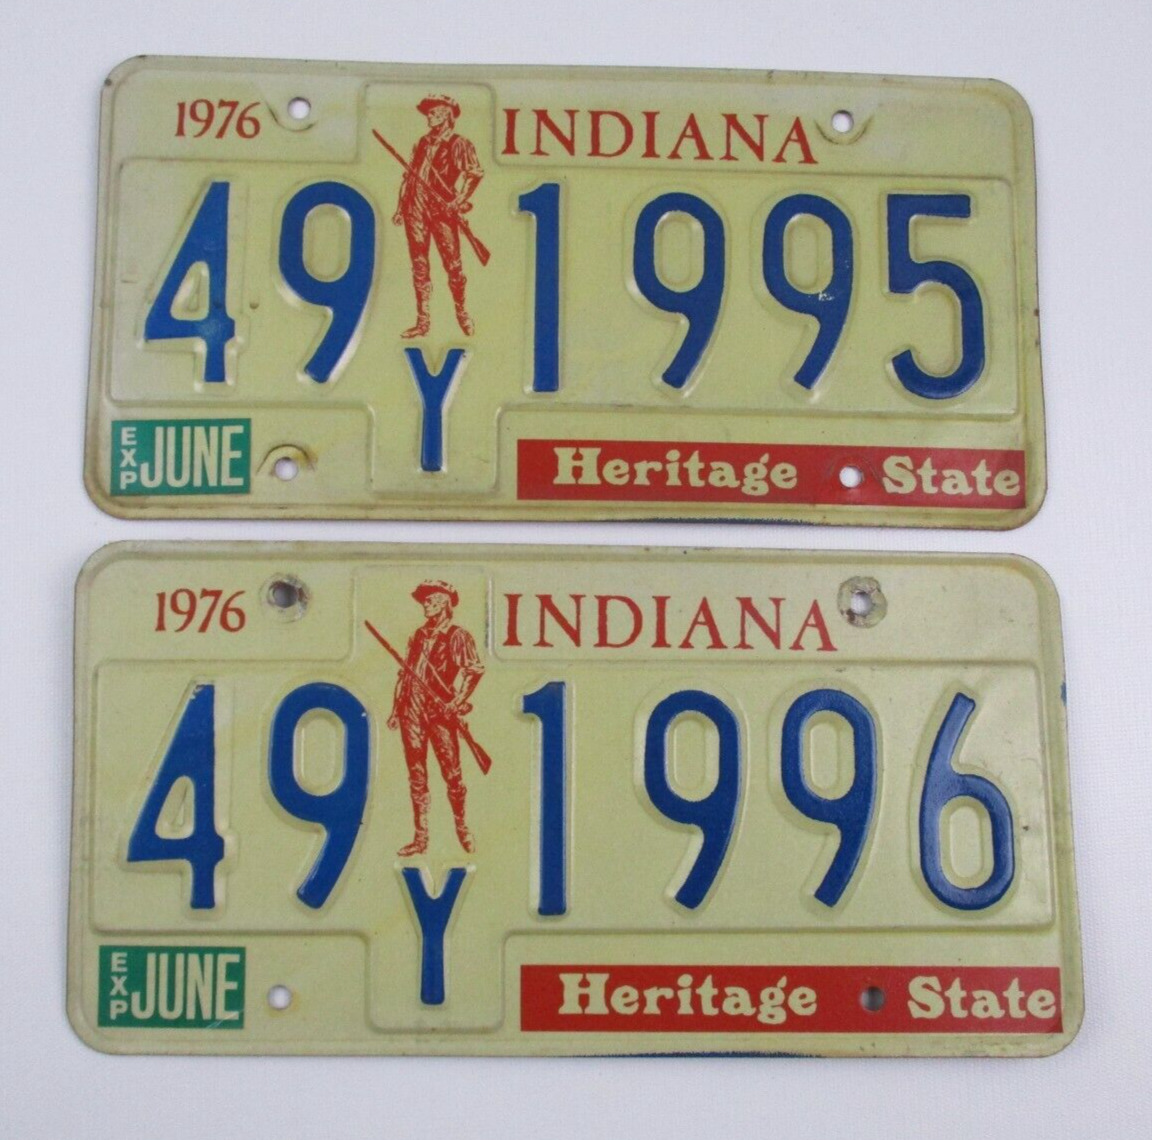 2 1976 Vintage Indiana License Plates Heritage State # 49Y 1995 & 49Y 1996